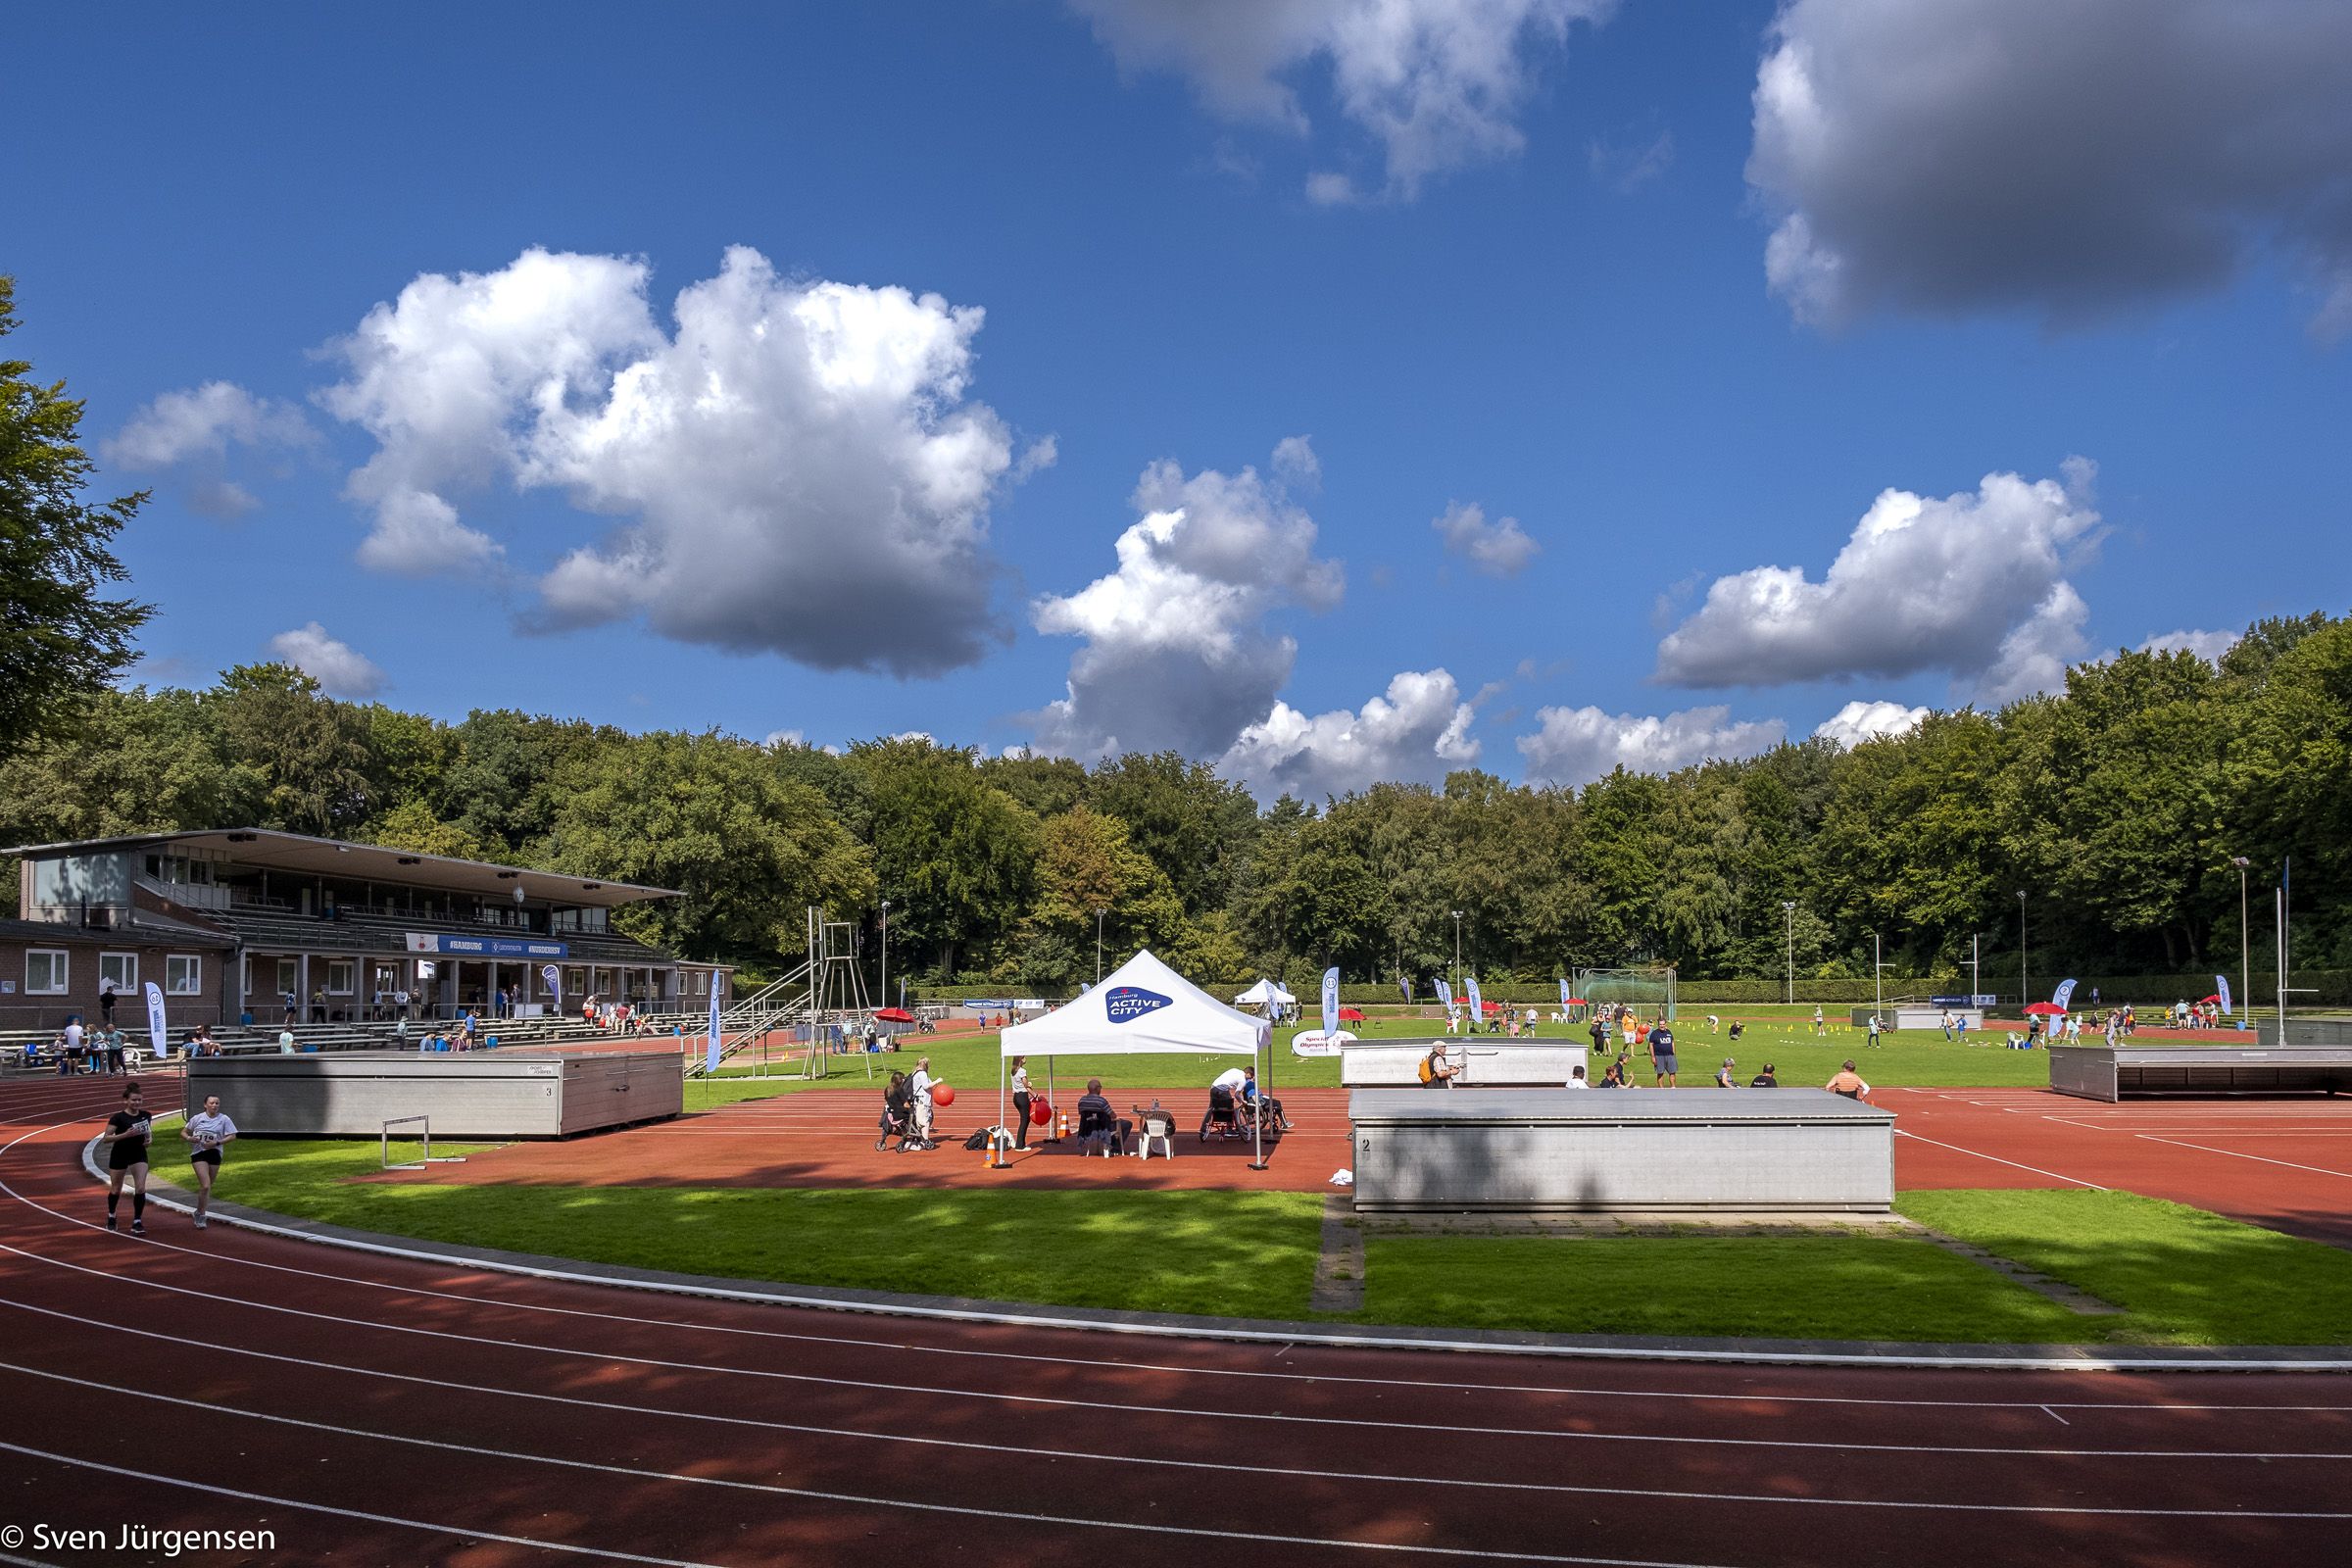 Bild eines Sportplatzes bei blauem Himmel. Auf dem Sportplatz sind verschiedene Aktivitäten aufgebaut.